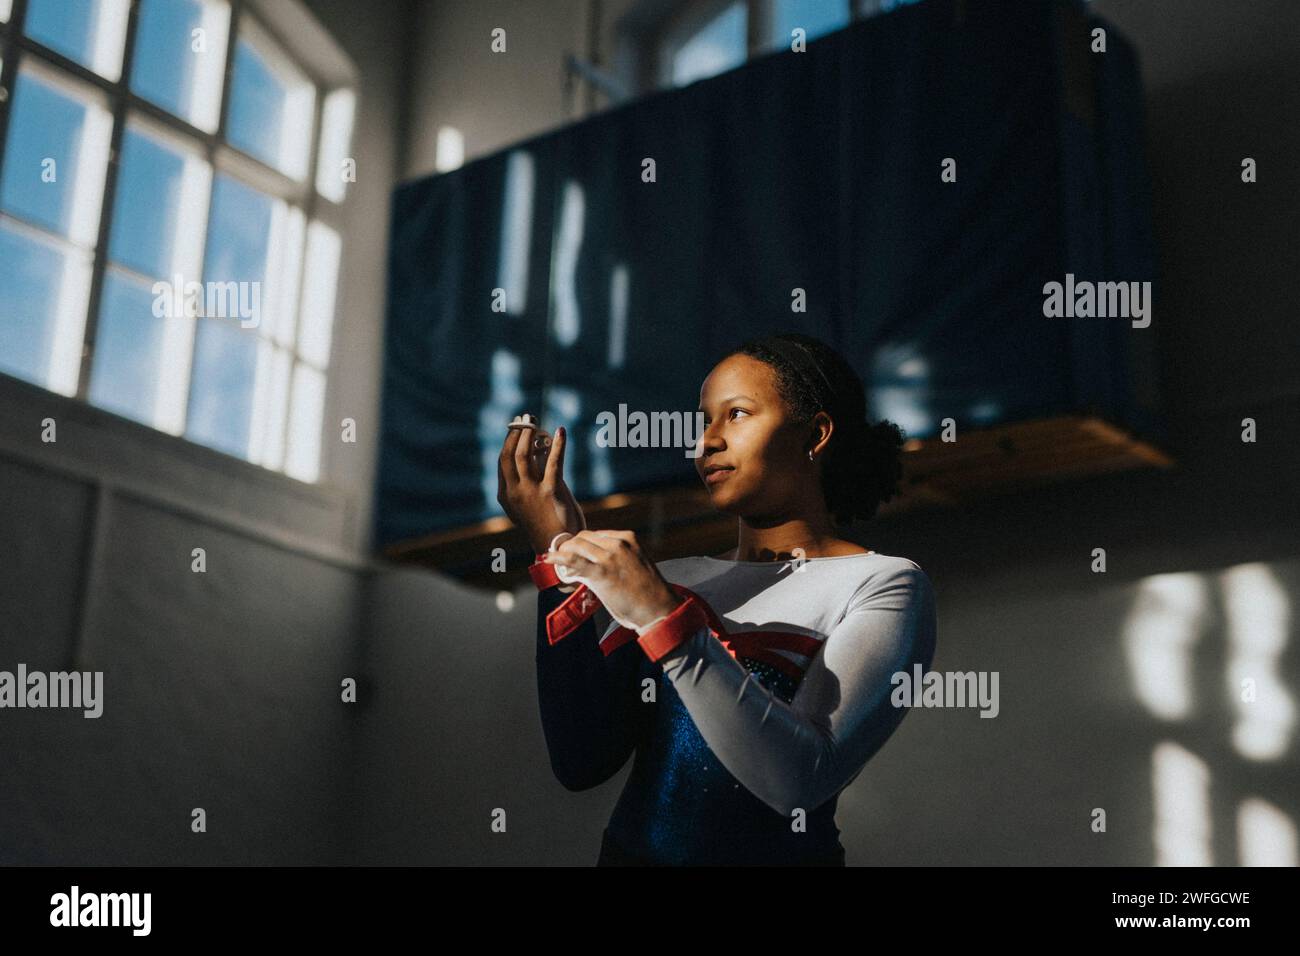 Contemplative teenage girl standing in school gymnasium Stock Photo